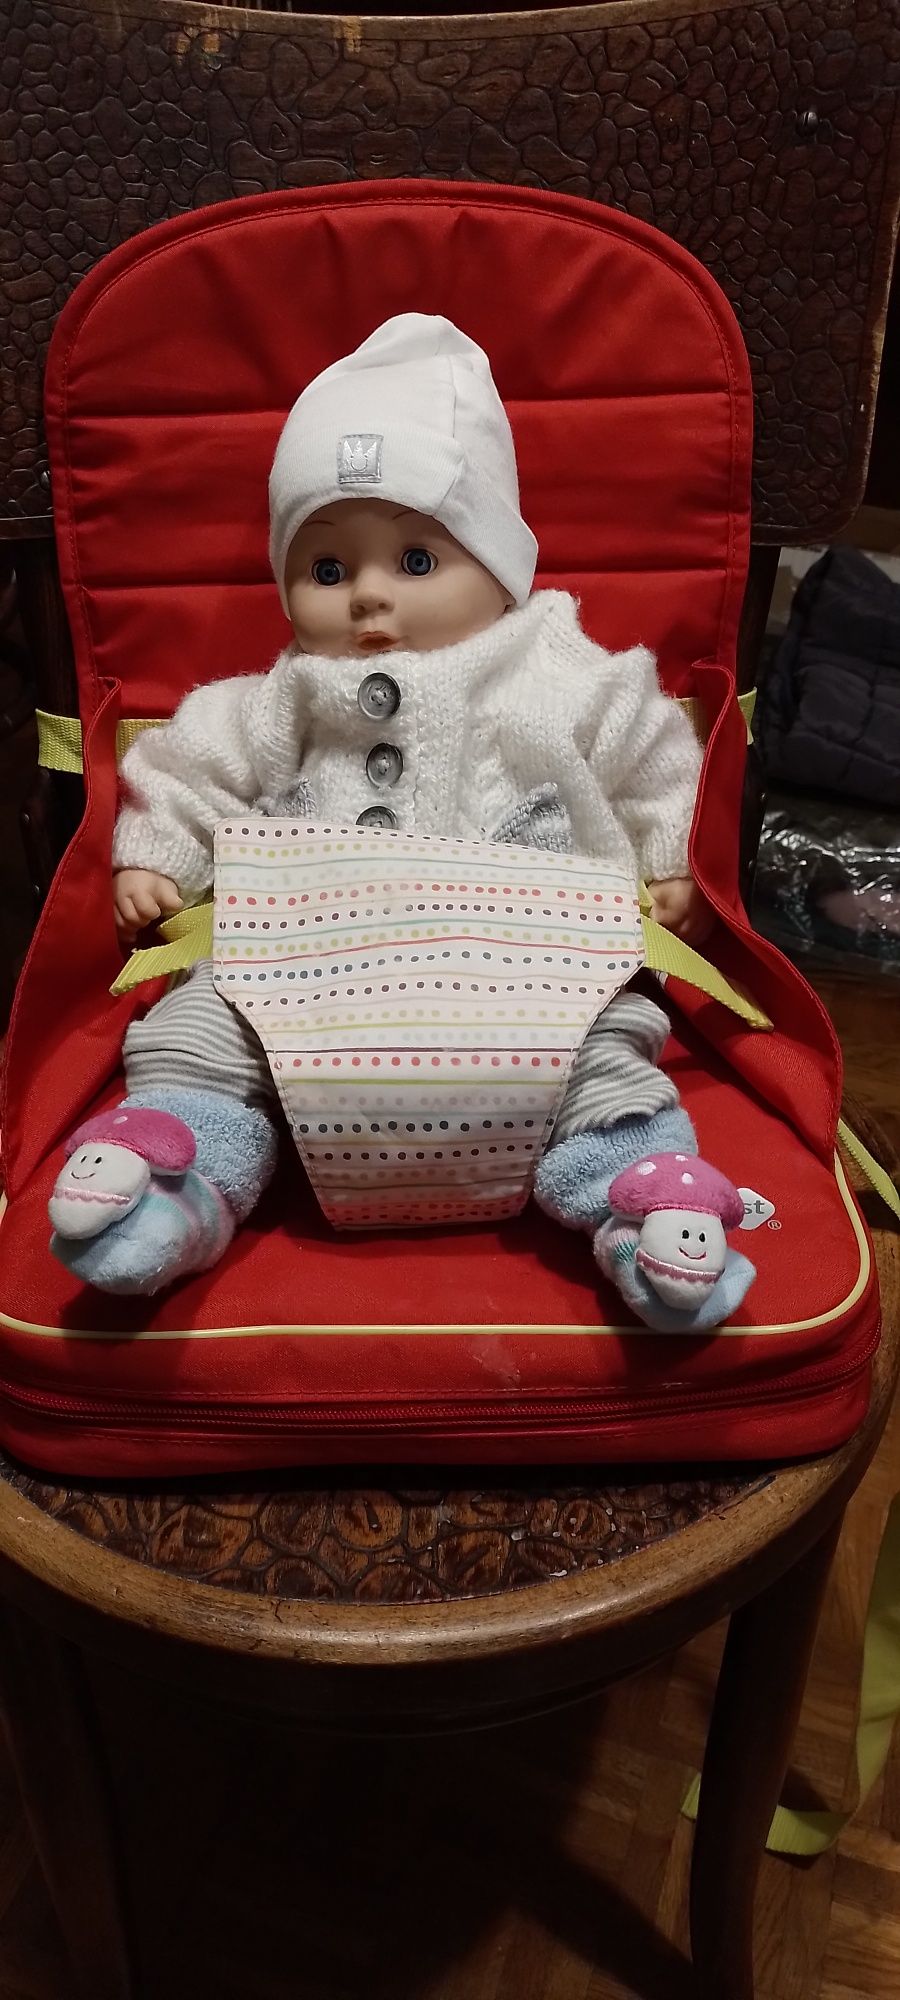 Krzesełko siedzisko do karmienia dziecka przypinane do krzesła